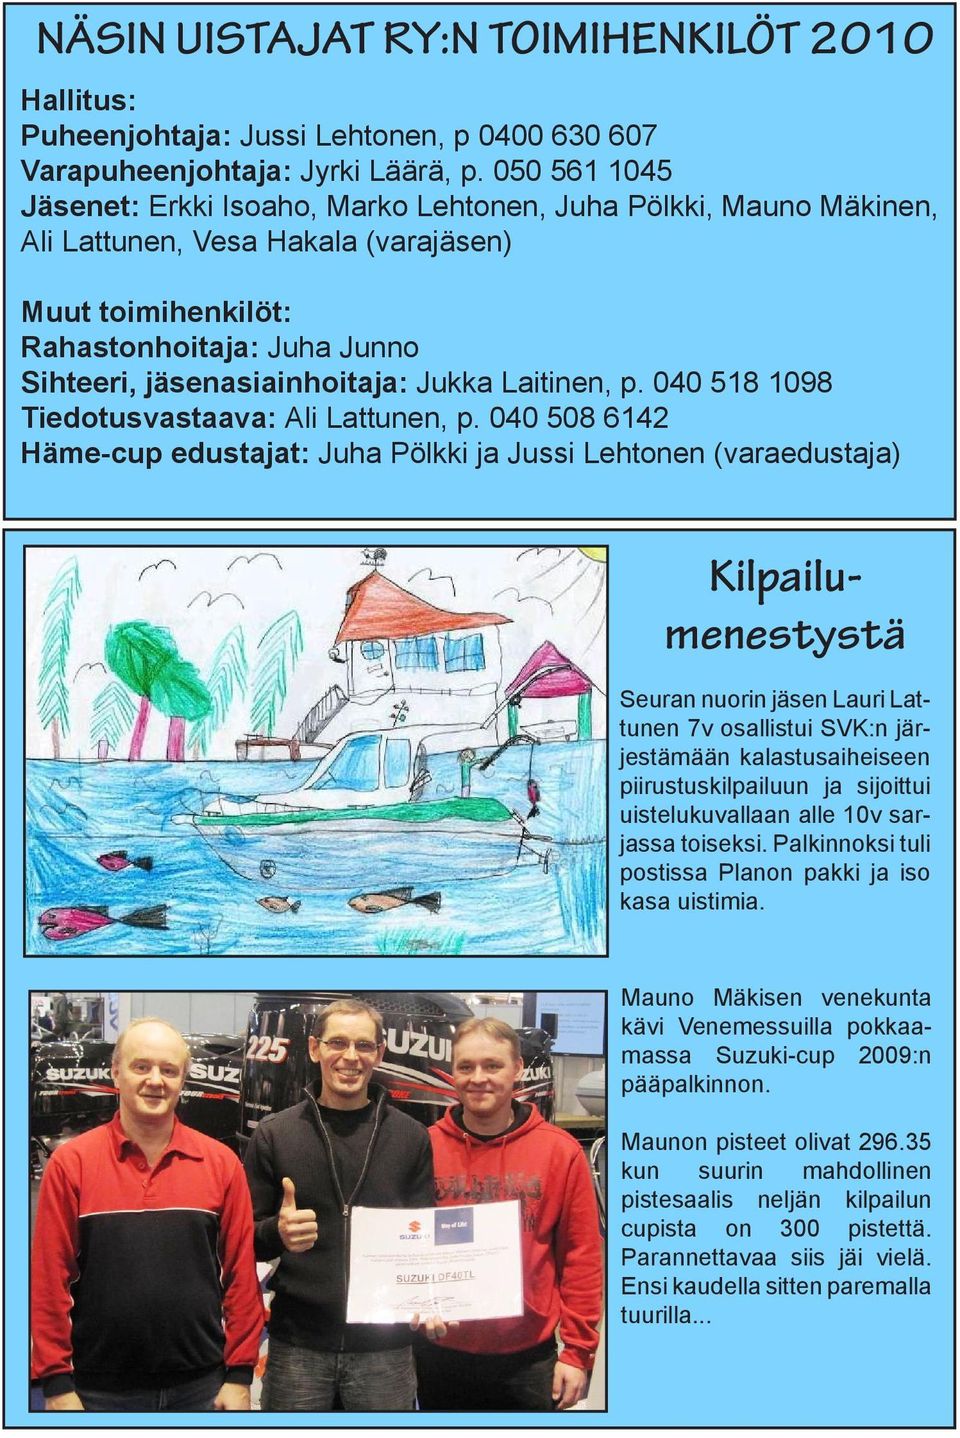 Jukka Laitinen, p. 040 518 1098 Tiedotusvastaava: Ali Lattunen, p.